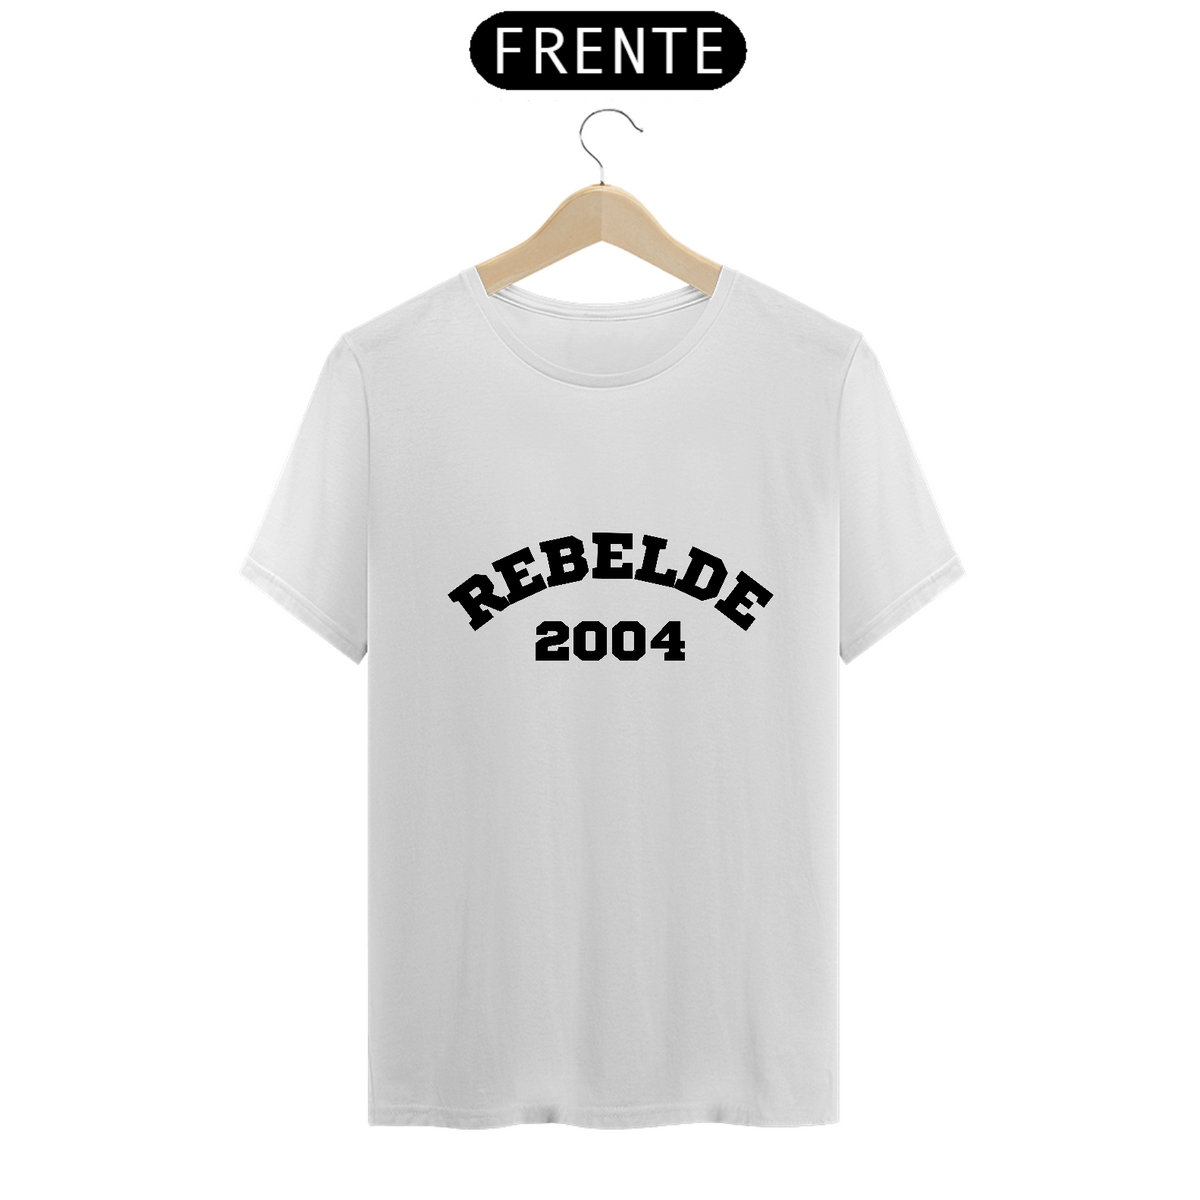 Nome do produto: Camiseta Unissex - Rebelde 2004 ®